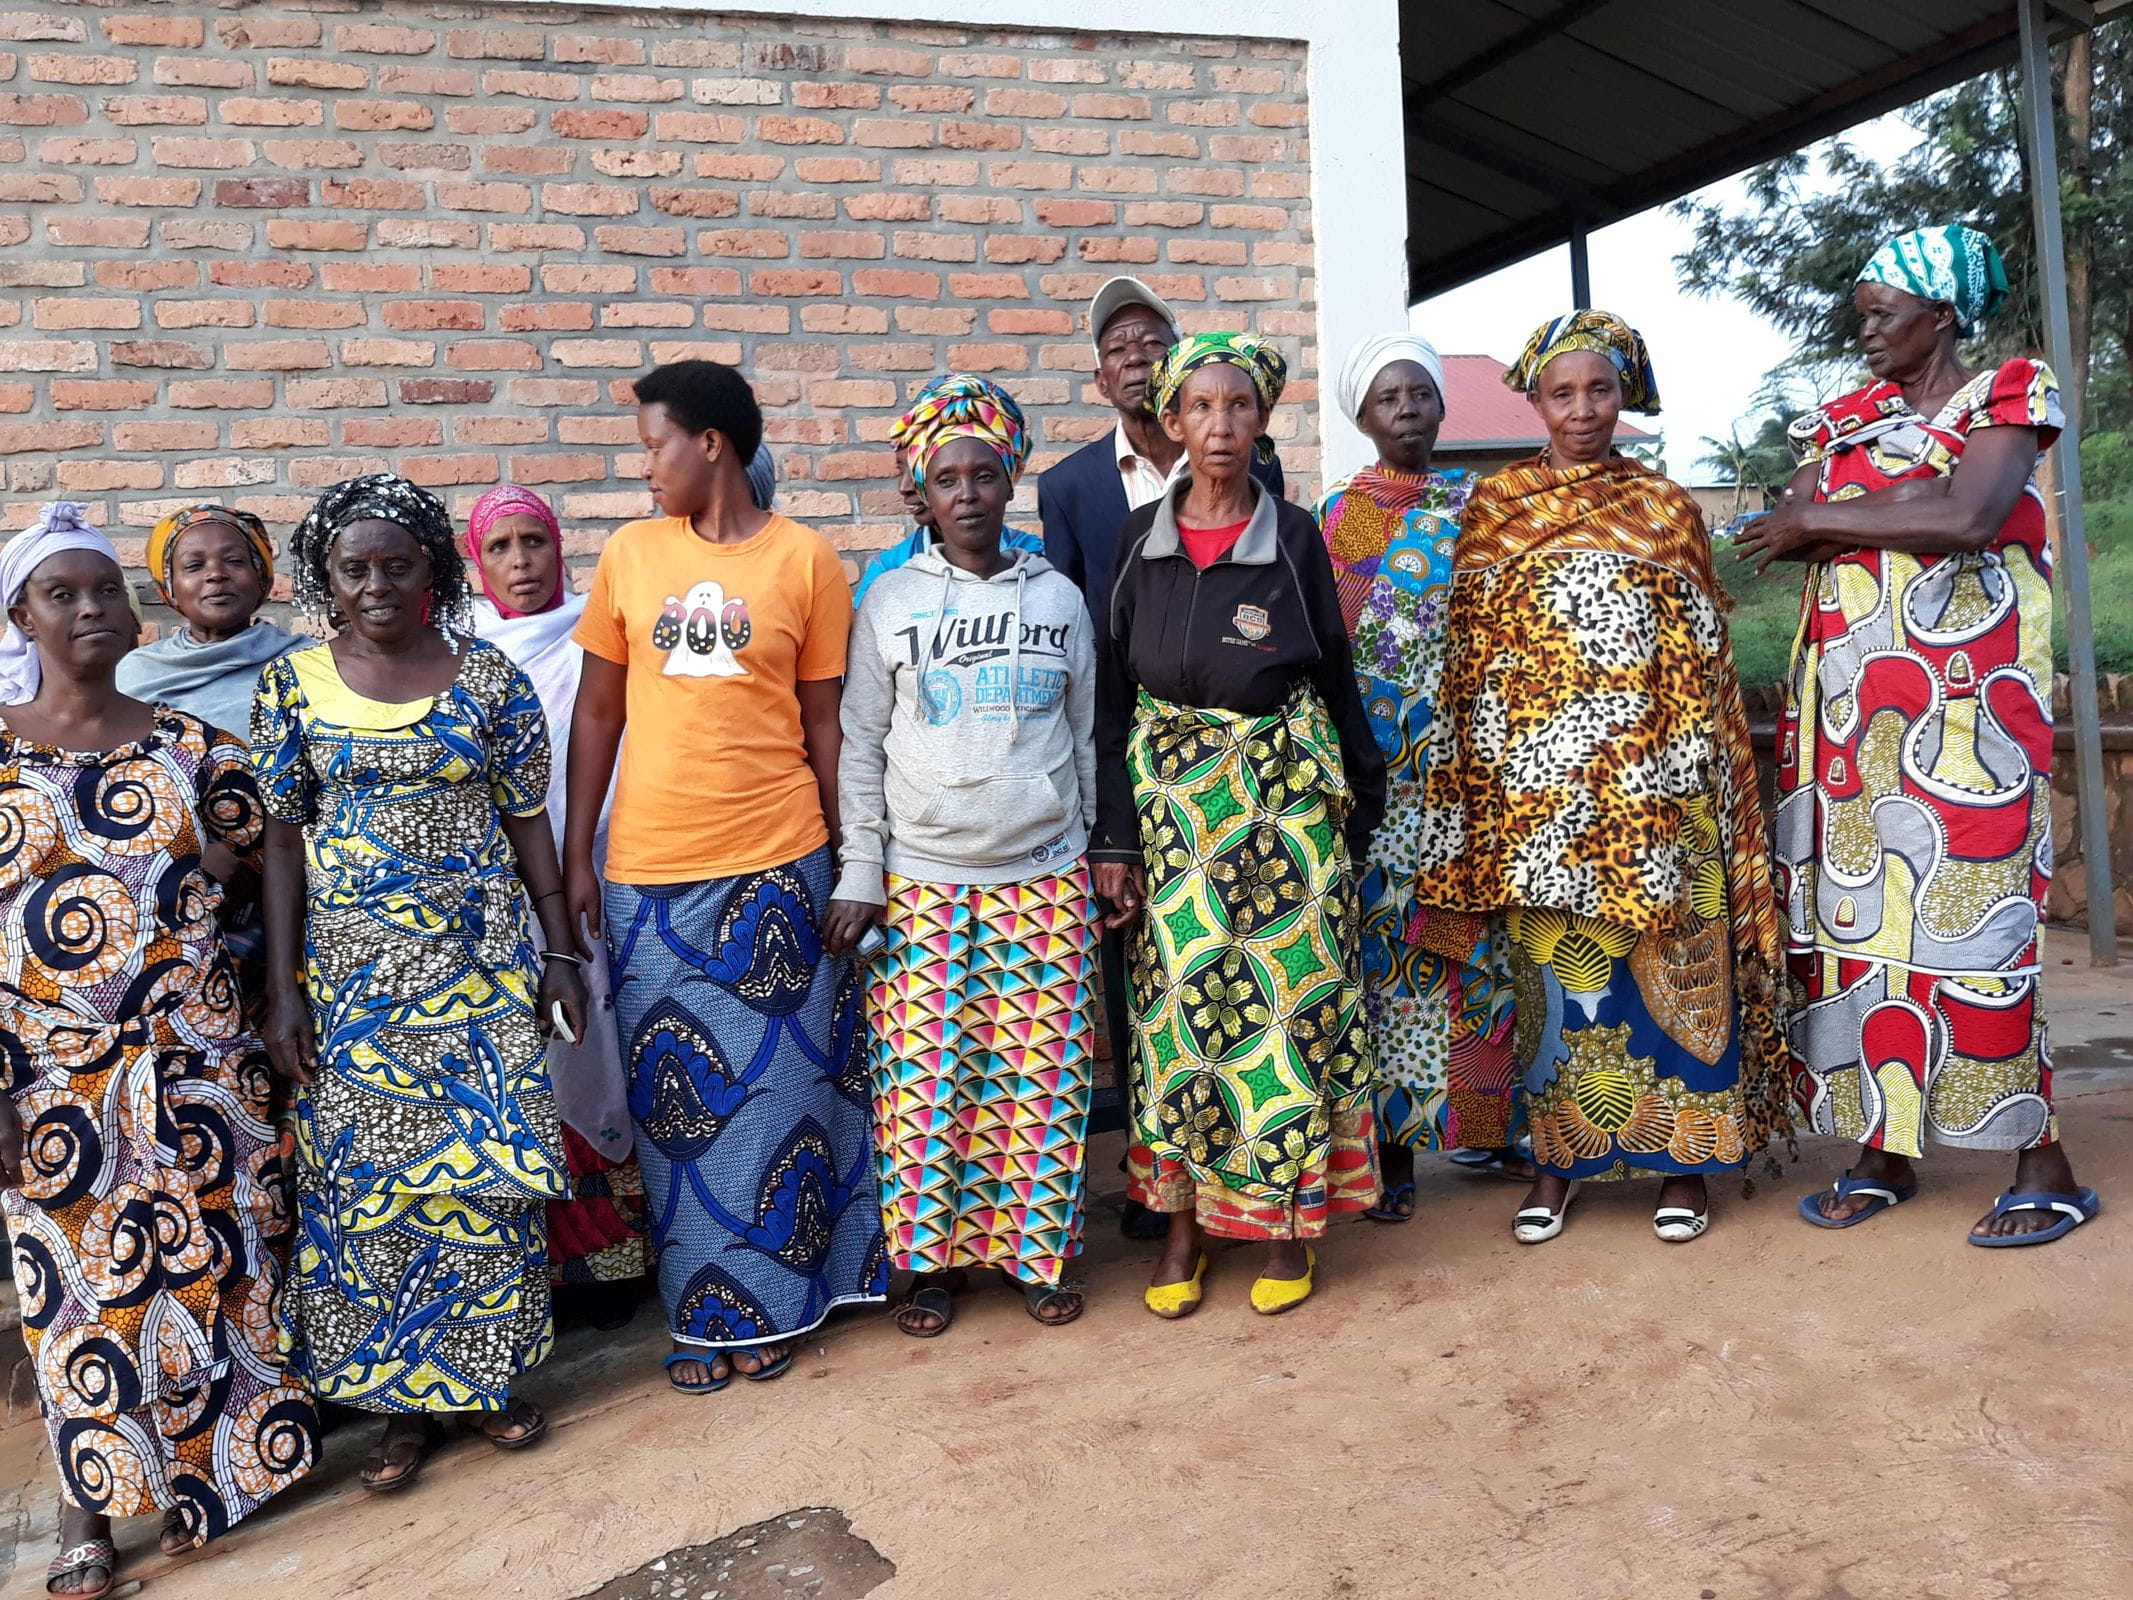 Reportage Ruanda: Aus Feinden wurden Freunde; Foto: Frauen des SHG Duterimbere, stehend (Quelle: Felix Kaloki / Kindernothilfe)